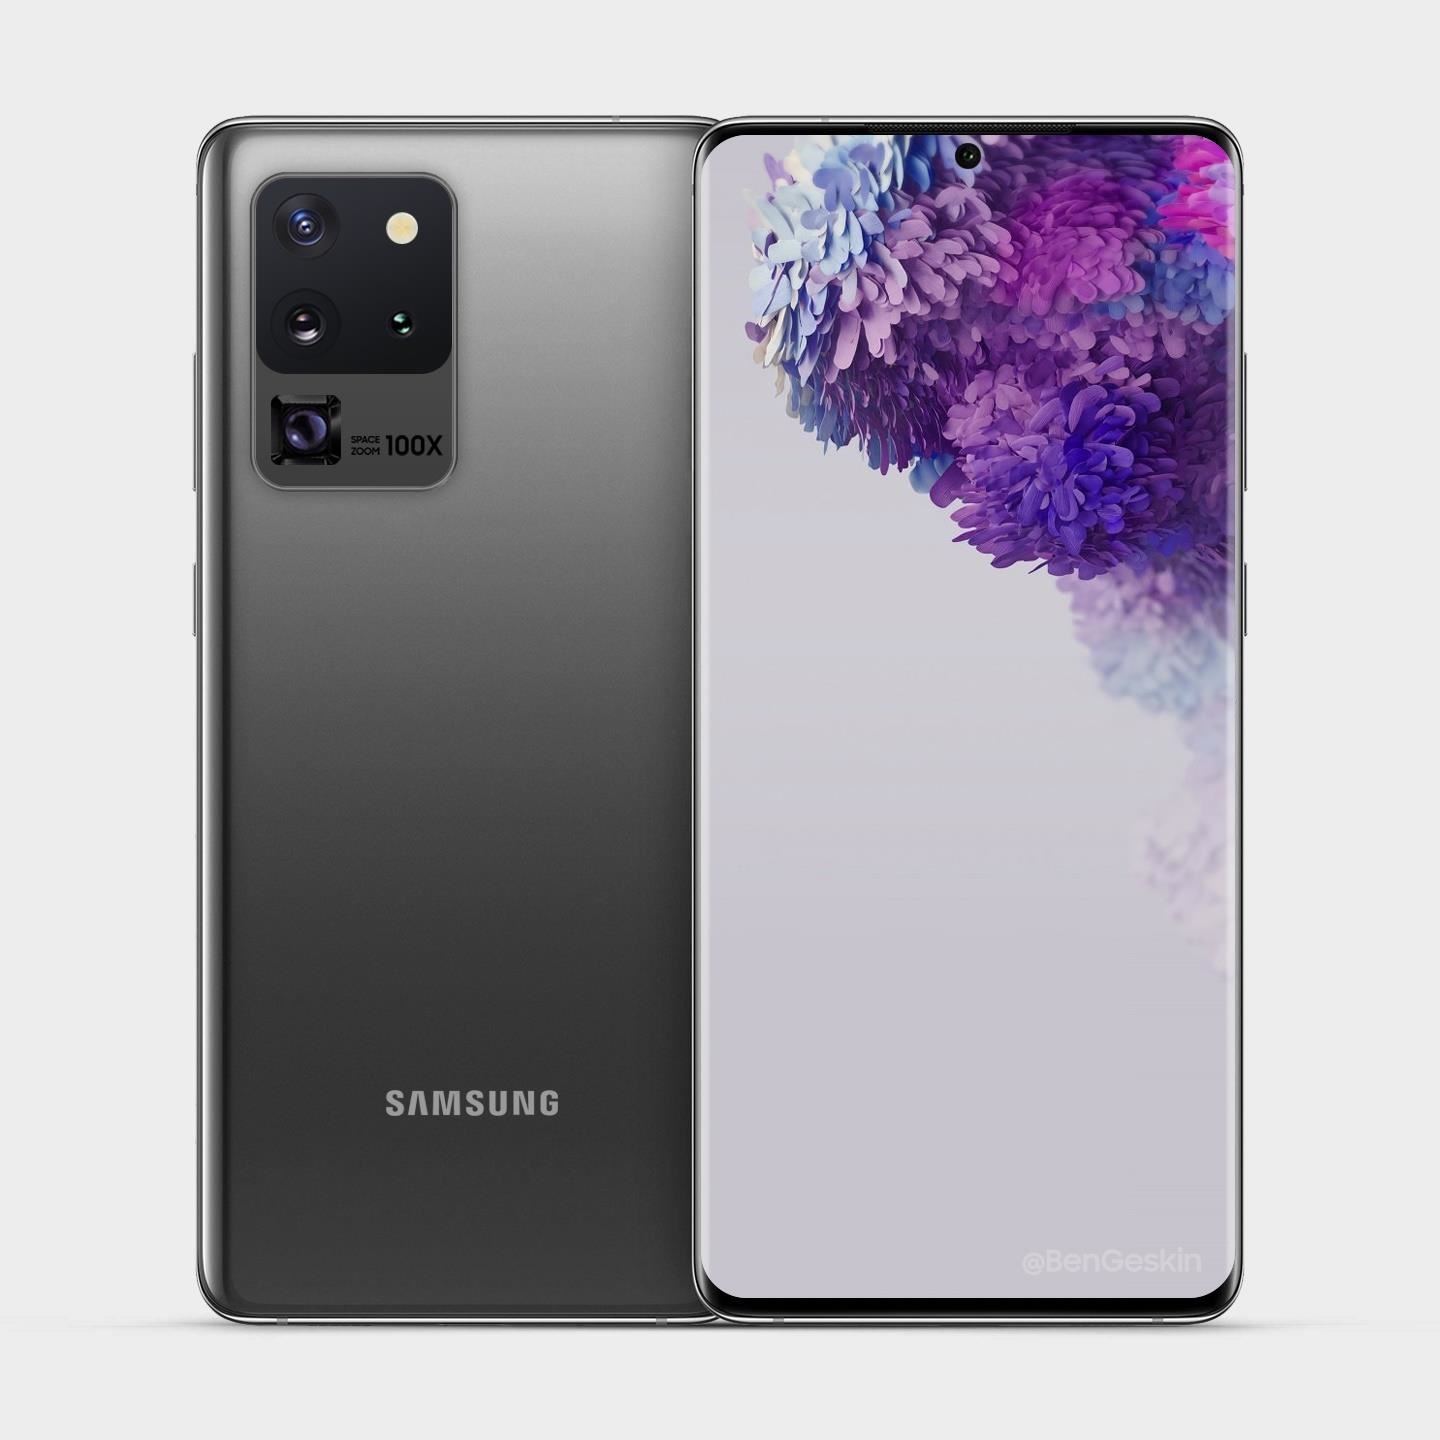 Samsung Galaxy S20 Ultra — a $1,399 Spec Sheet Monster